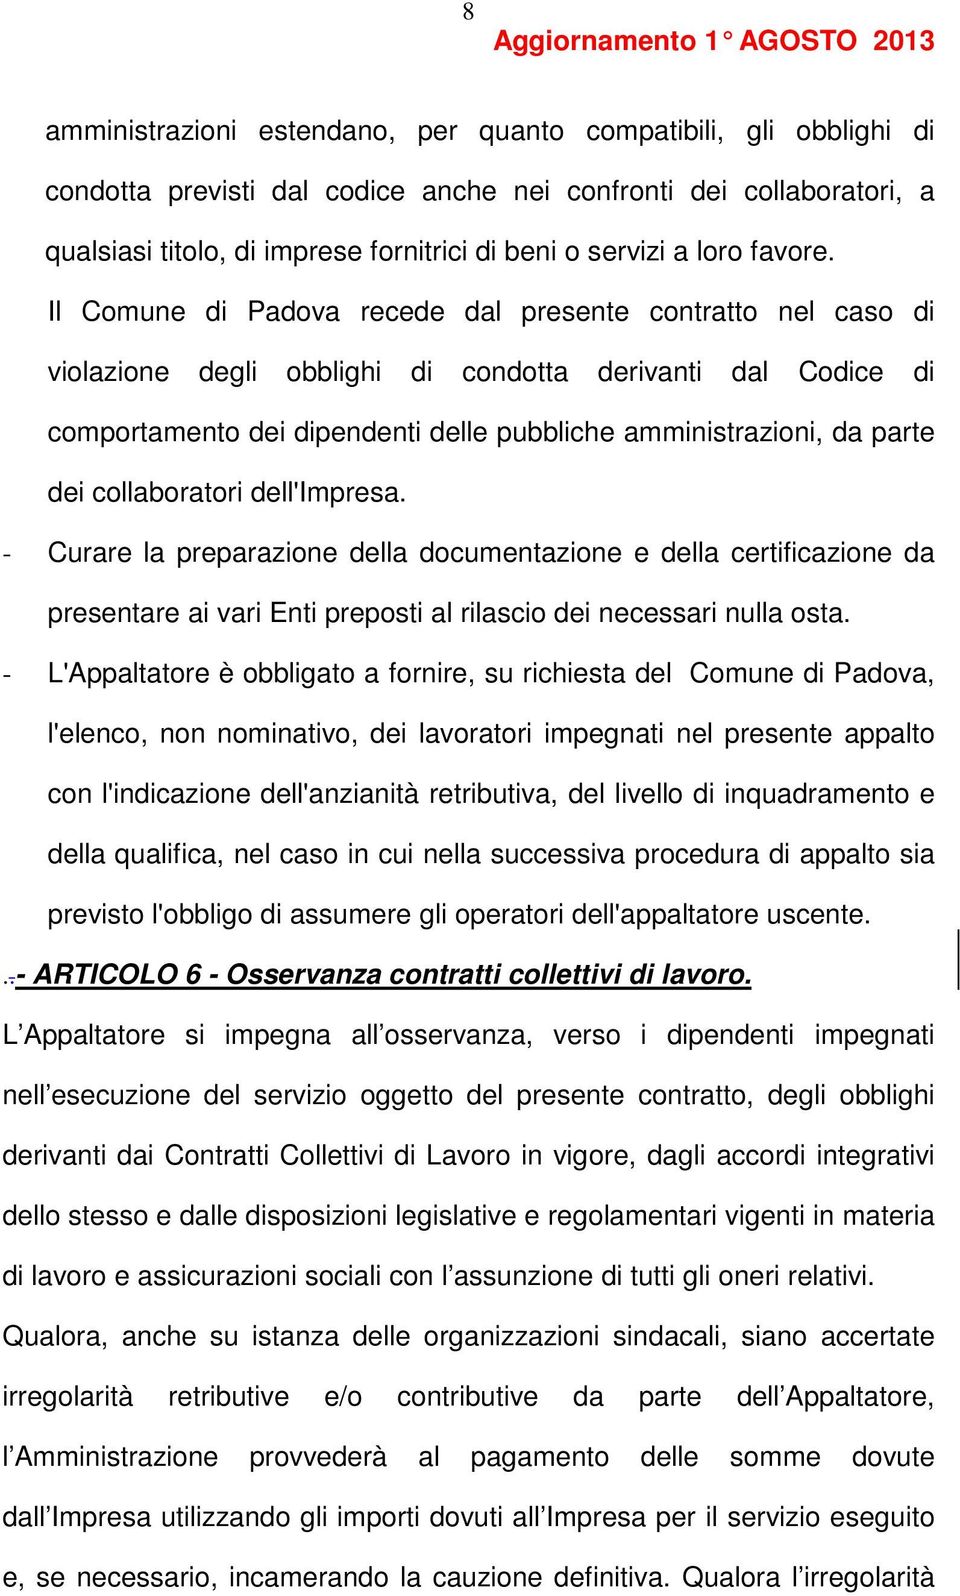 Il Comune di Padova recede dal presente contratto nel caso di violazione degli obblighi di condotta derivanti dal Codice di comportamento dei dipendenti delle pubbliche amministrazioni, da parte dei